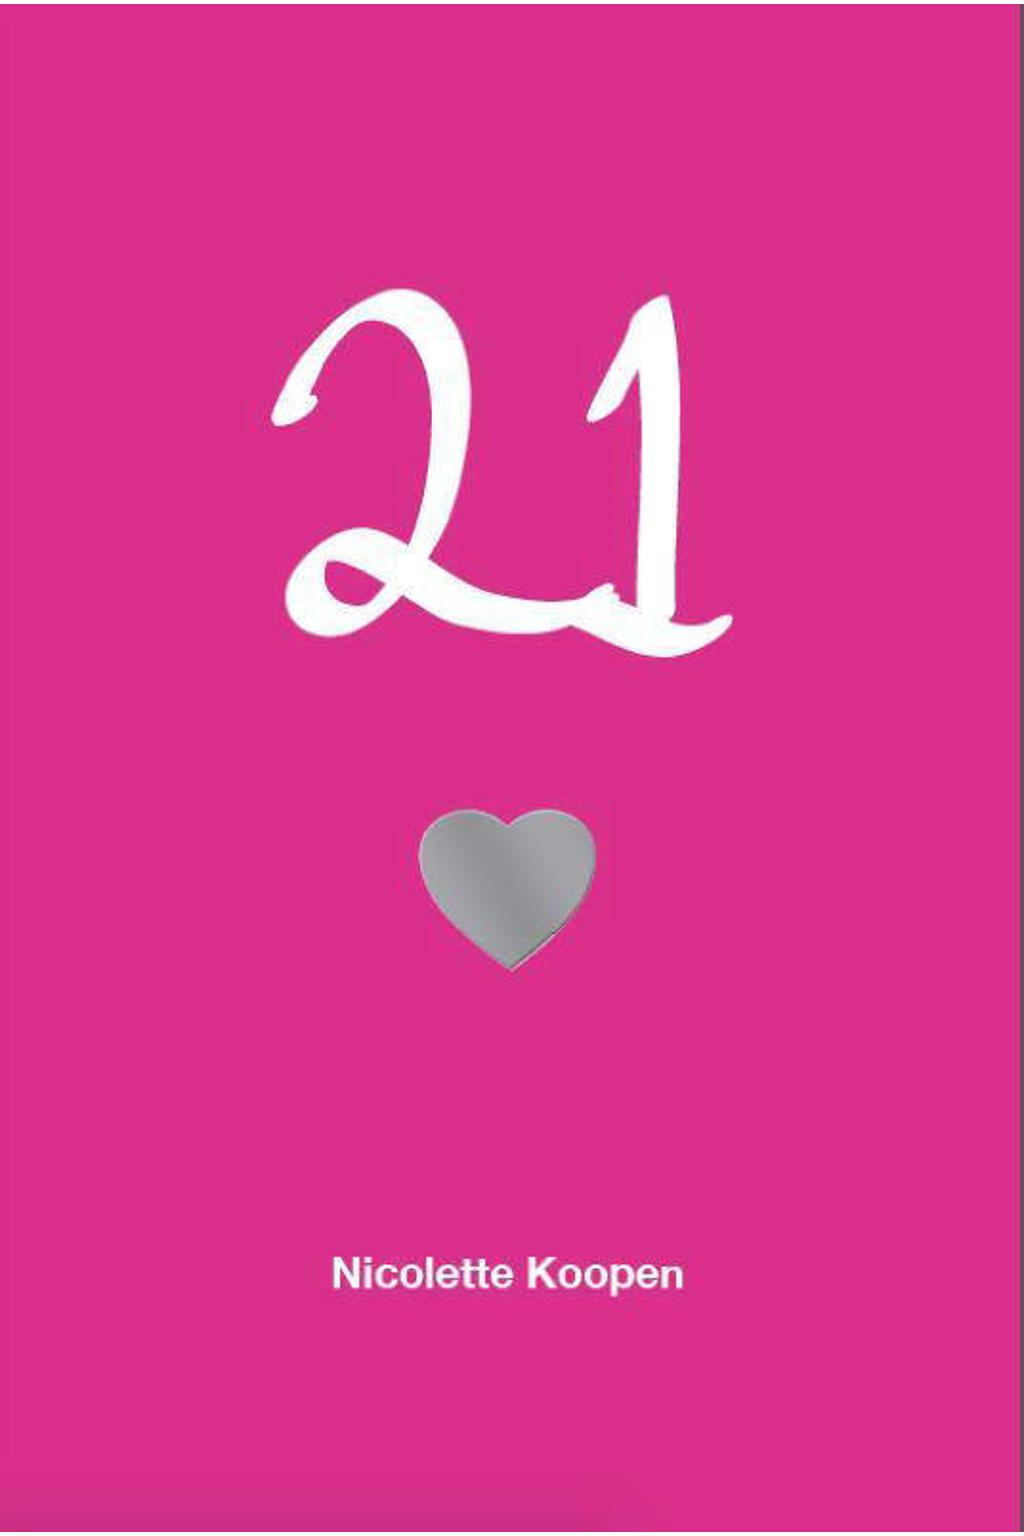 21 - Nicolette Koopen